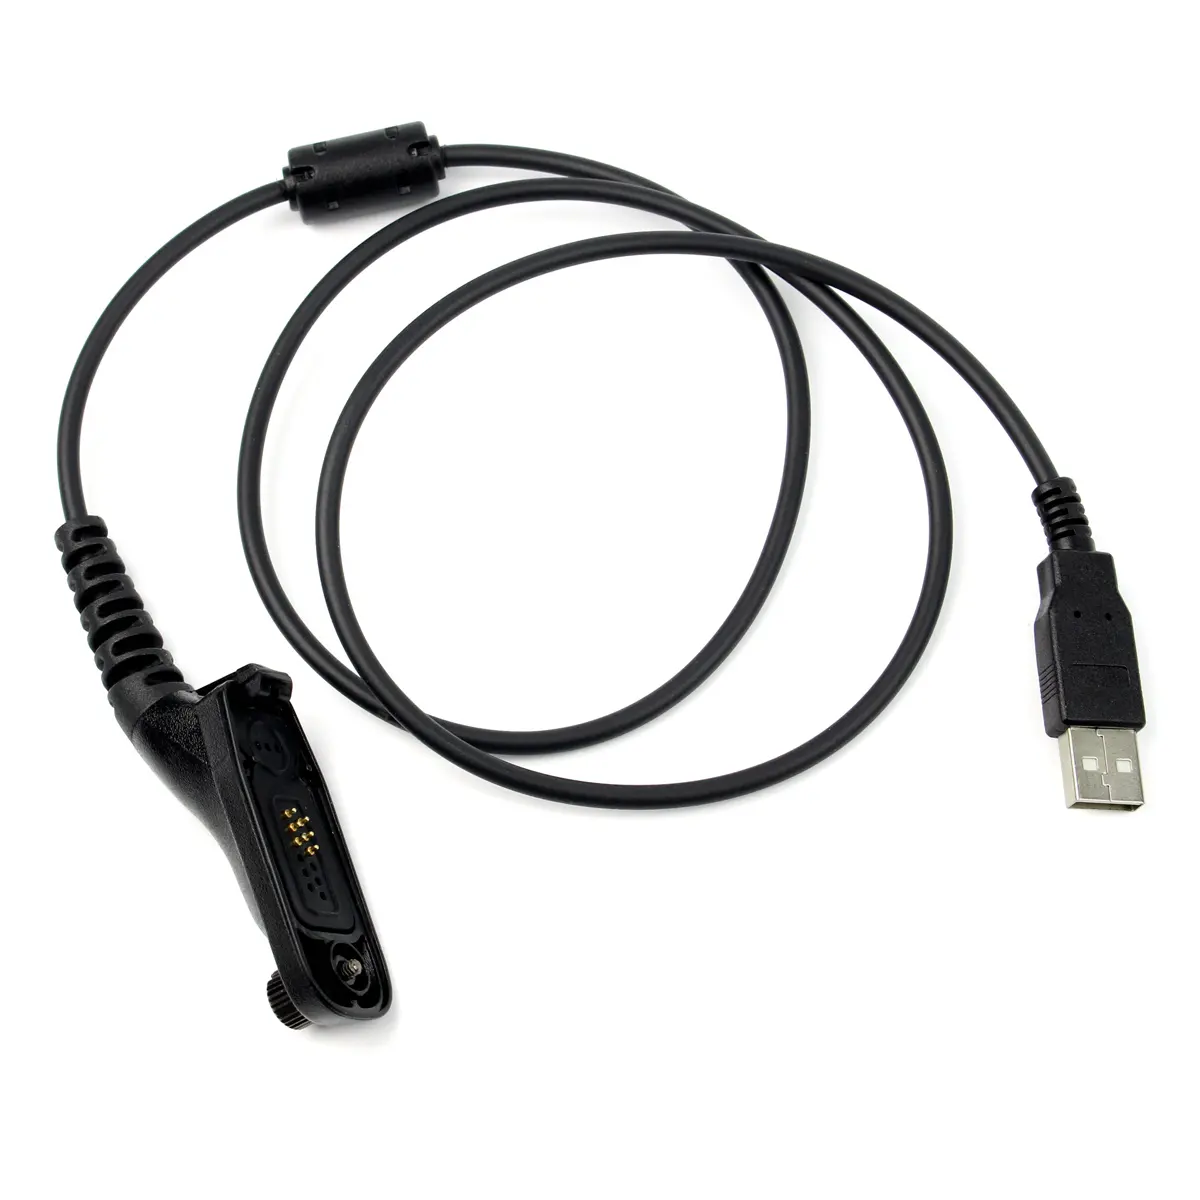 جديد اتجاهين راديو USB بيانات البرمجة كابل موتورولا XPR-6580 DP-3400/3401 XiR P8200 XiR P8208 XPR-6300 APX-4000/4150/6150 +